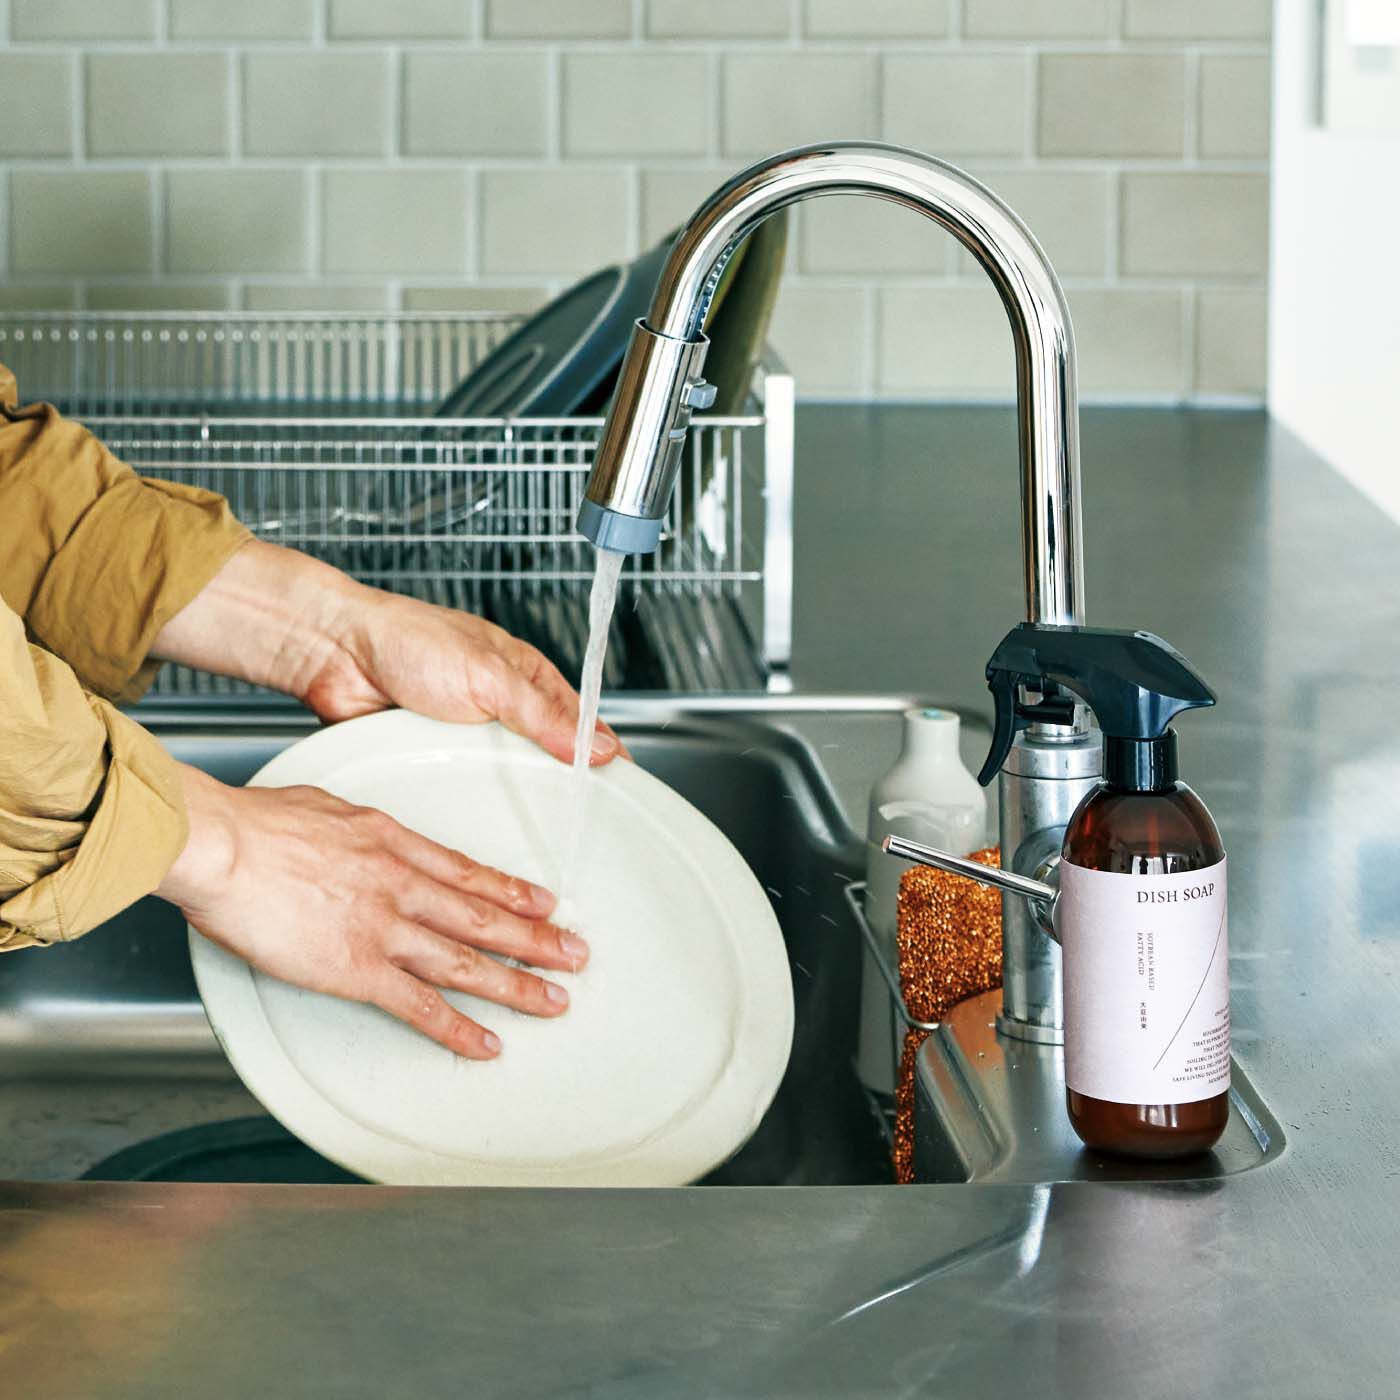 フェリシモの雑貨 Kraso|1/d DISH SOAP ディスペンサー|キッチンになじむデザイン。